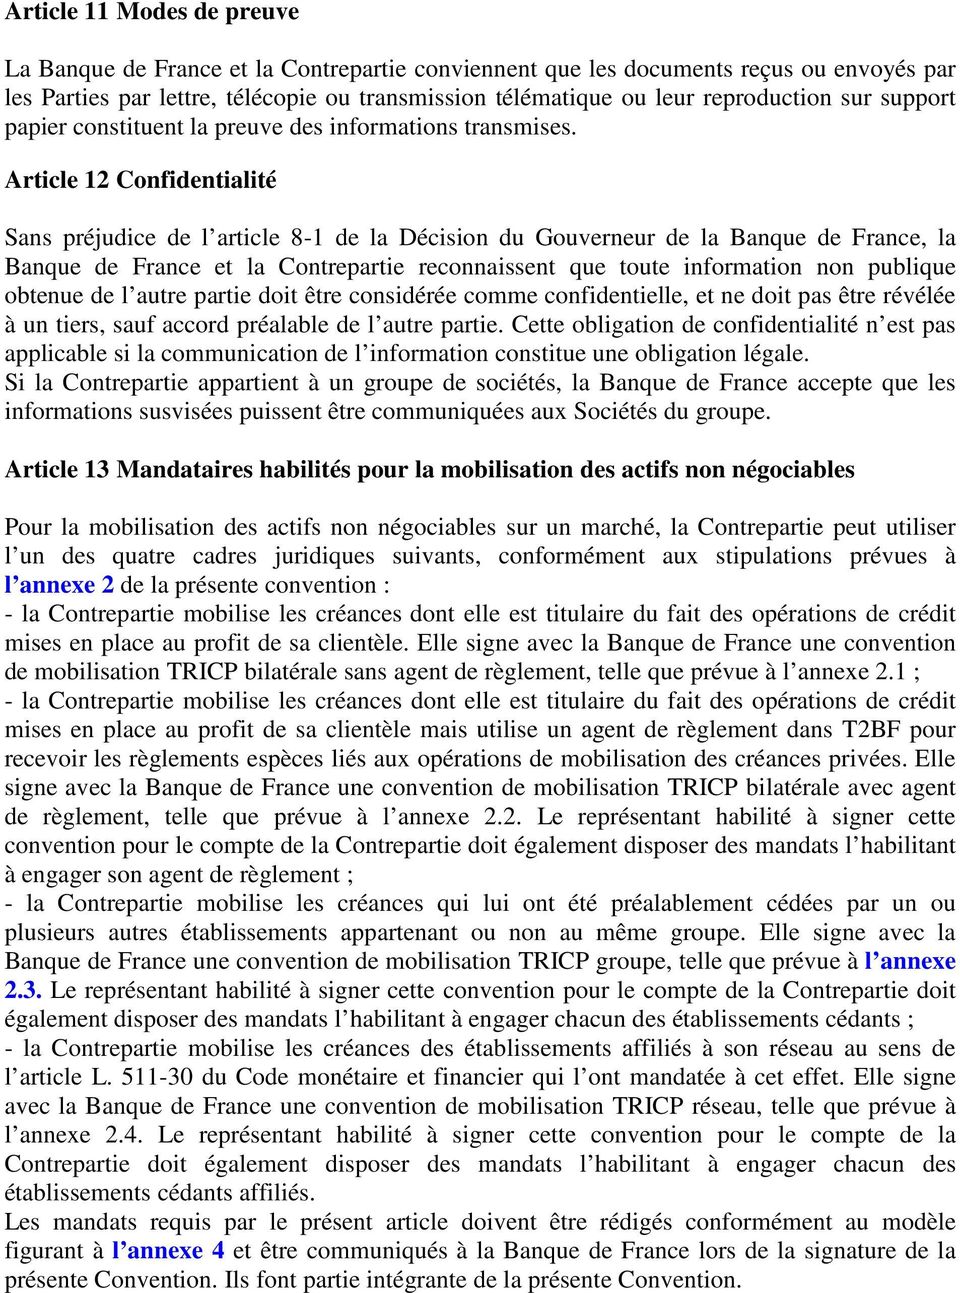 Article 12 Confidentialité Sans préjudice de l article 8-1 de la Décision du Gouverneur de la Banque de France, la Banque de France et la Contrepartie reconnaissent que toute information non publique